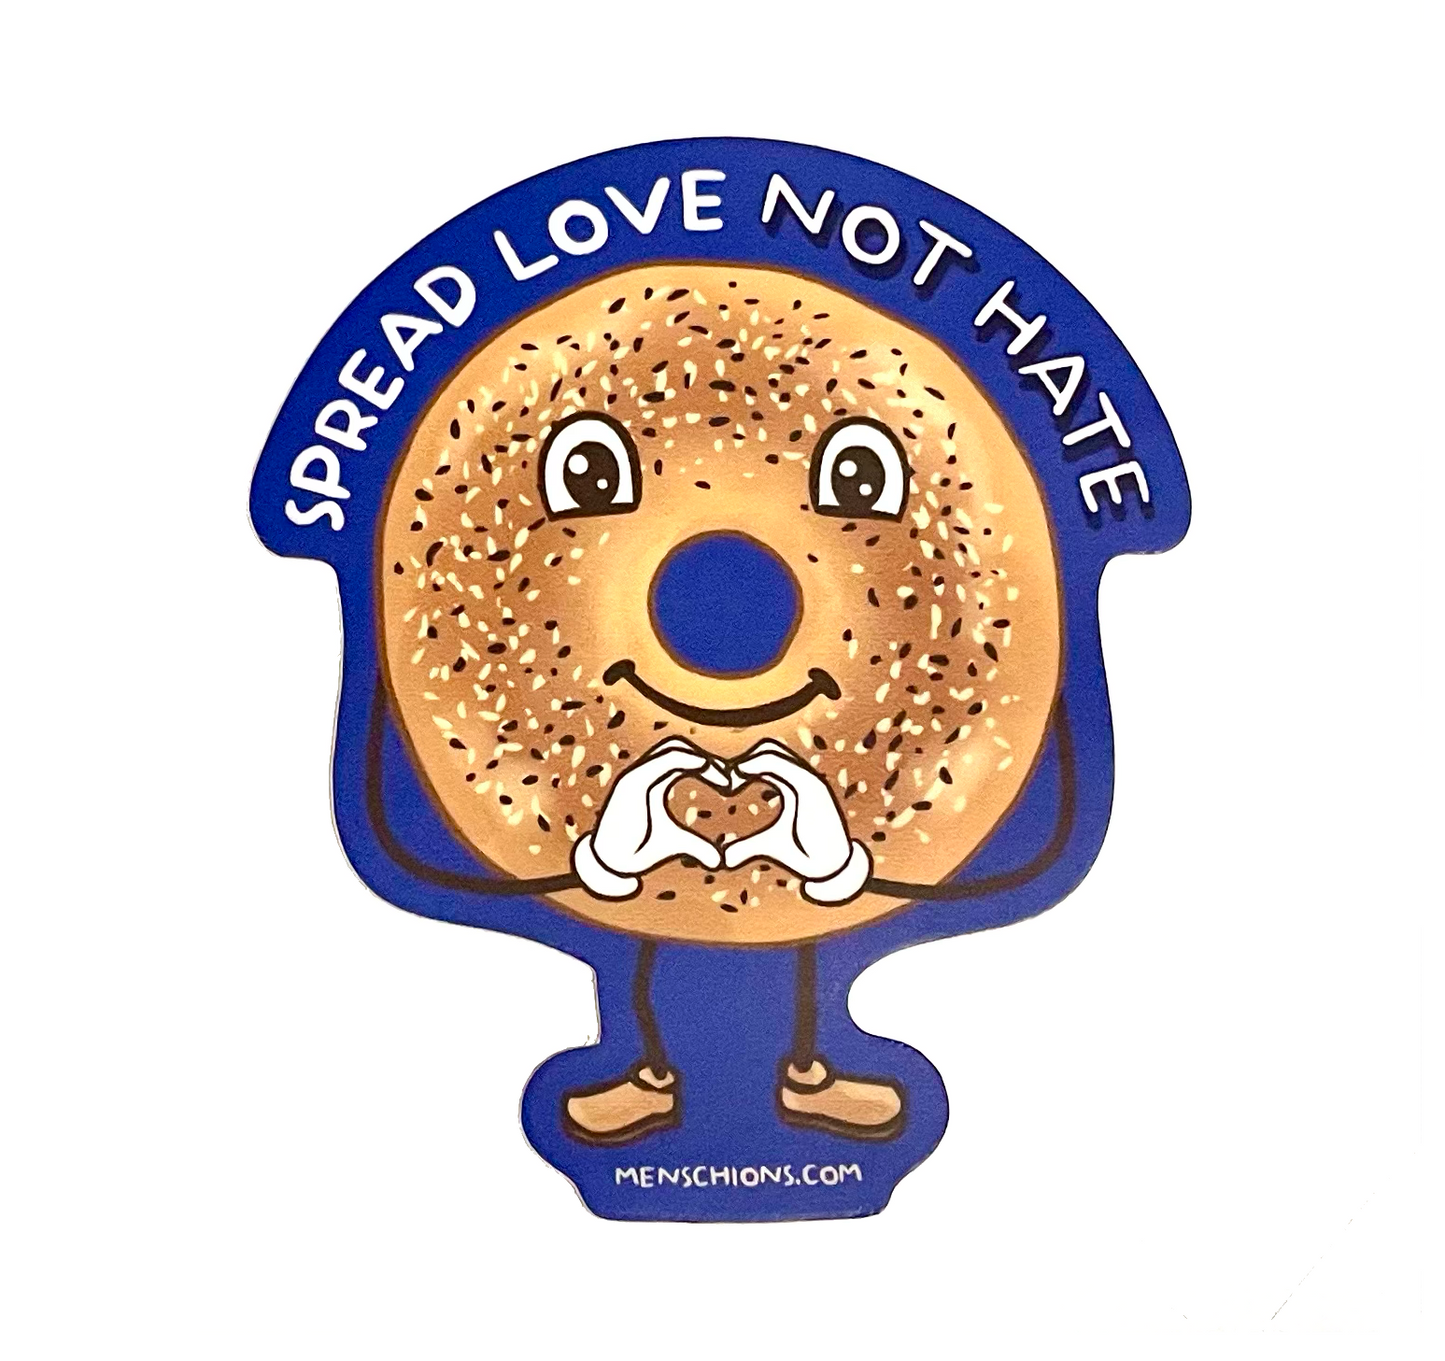 Spread Love Sticker